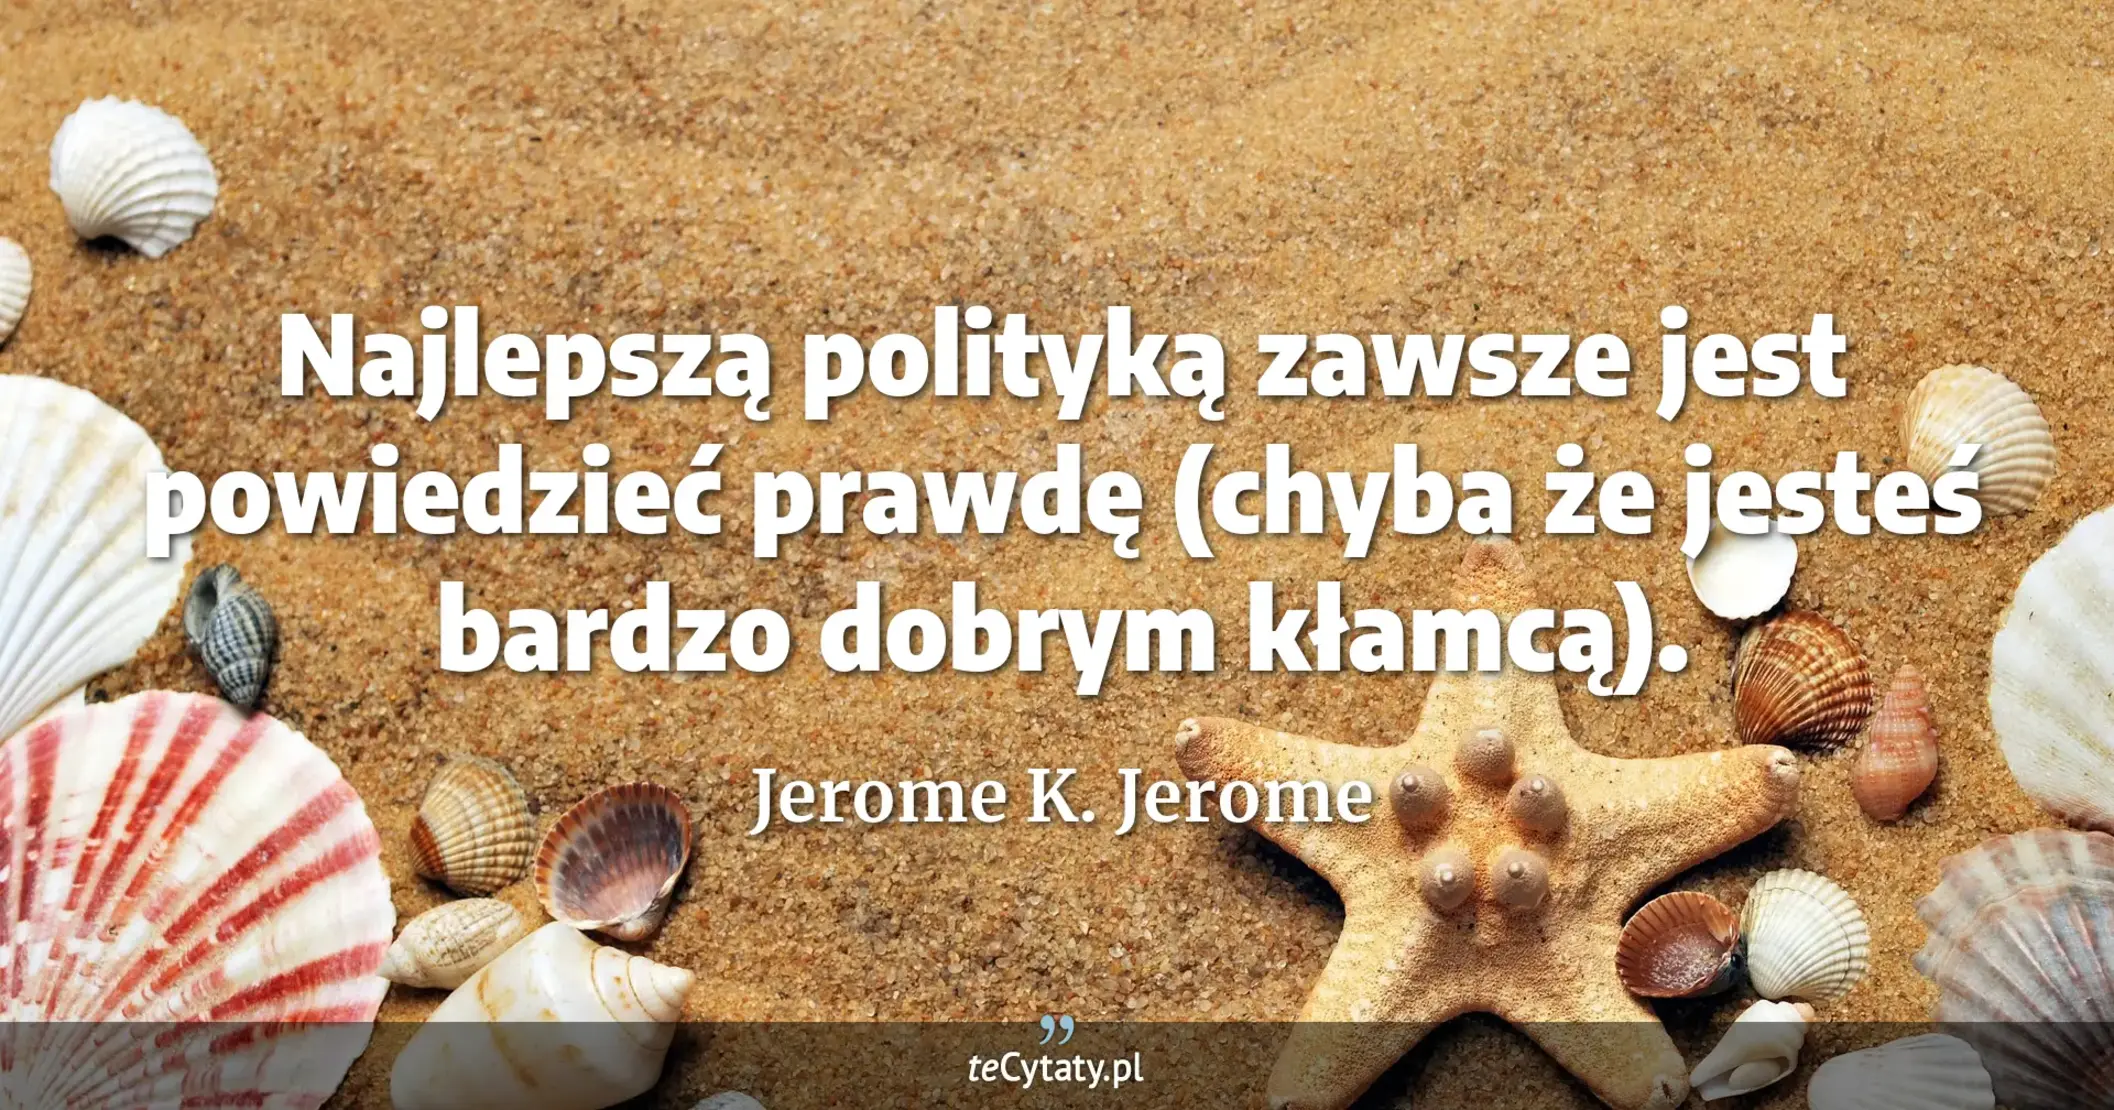 Najlepszą polityką zawsze jest powiedzieć prawdę (chyba że jesteś bardzo dobrym kłamcą). - Jerome K. Jerome